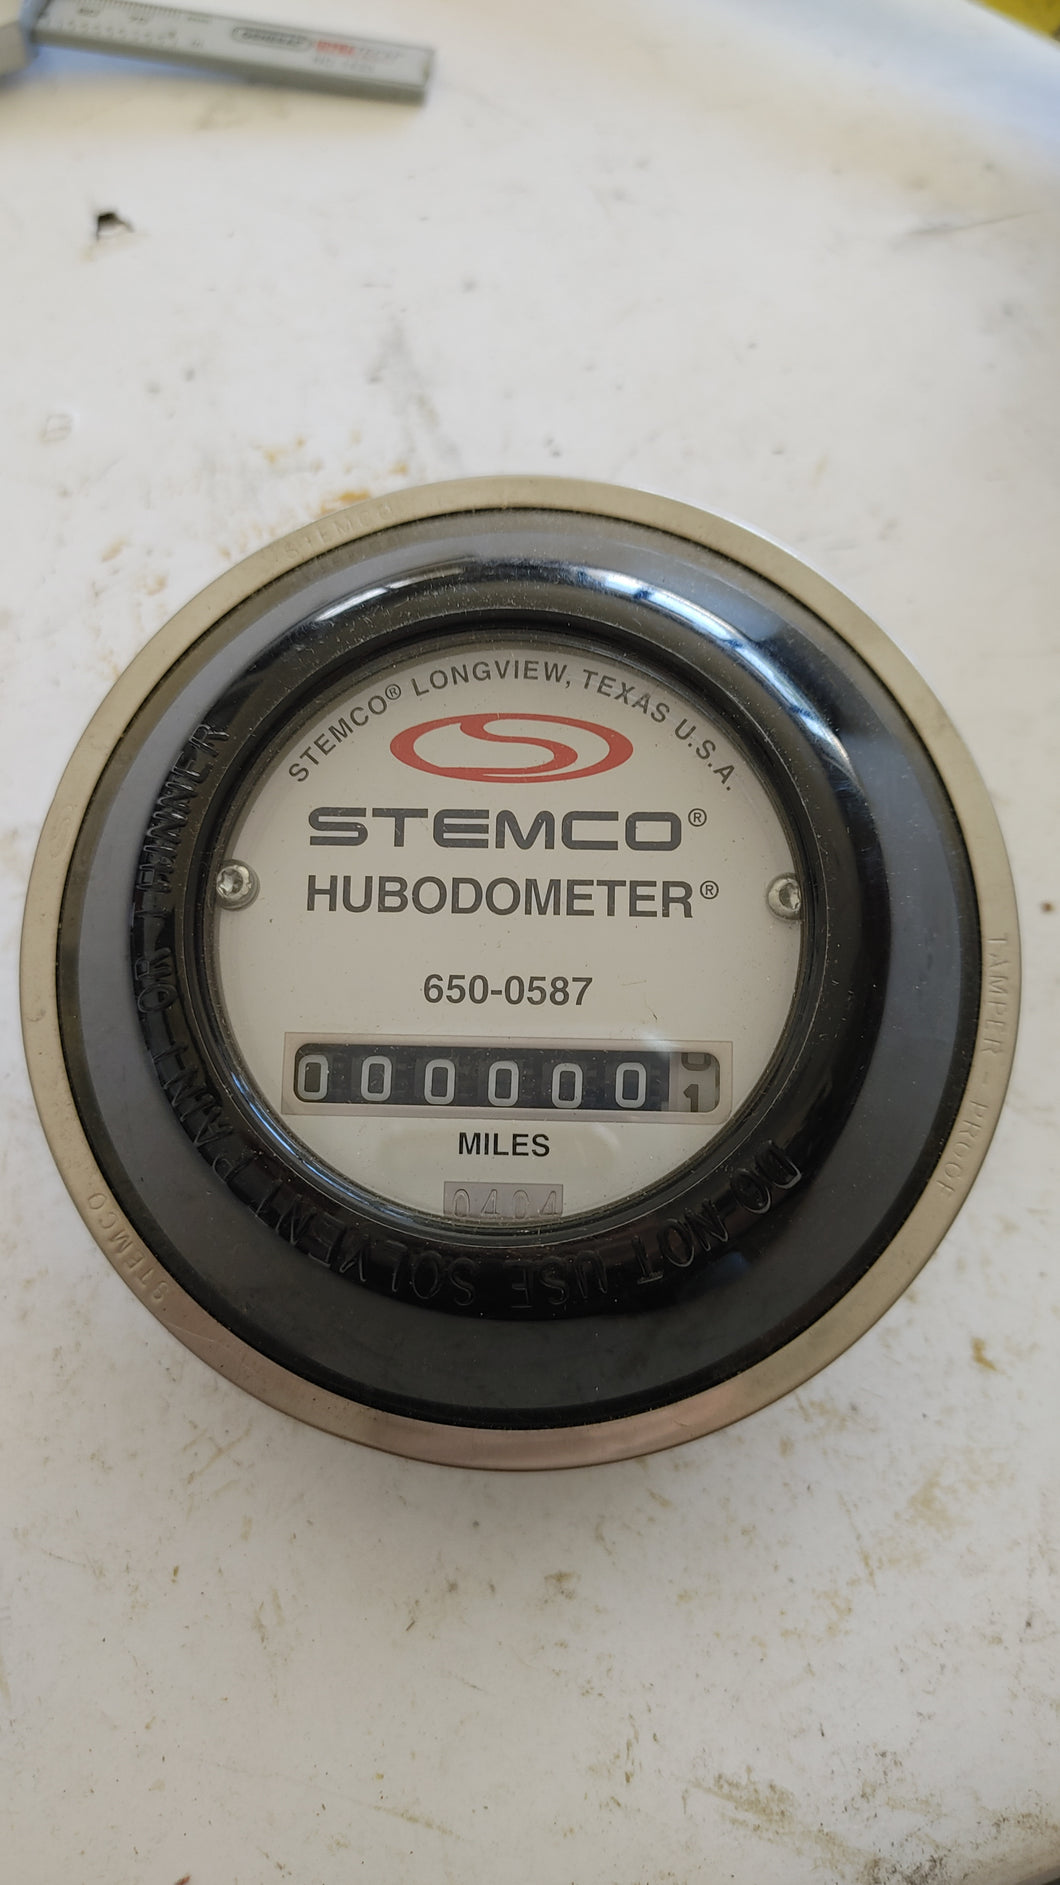 650-0587 - Stemco - Hubodometer